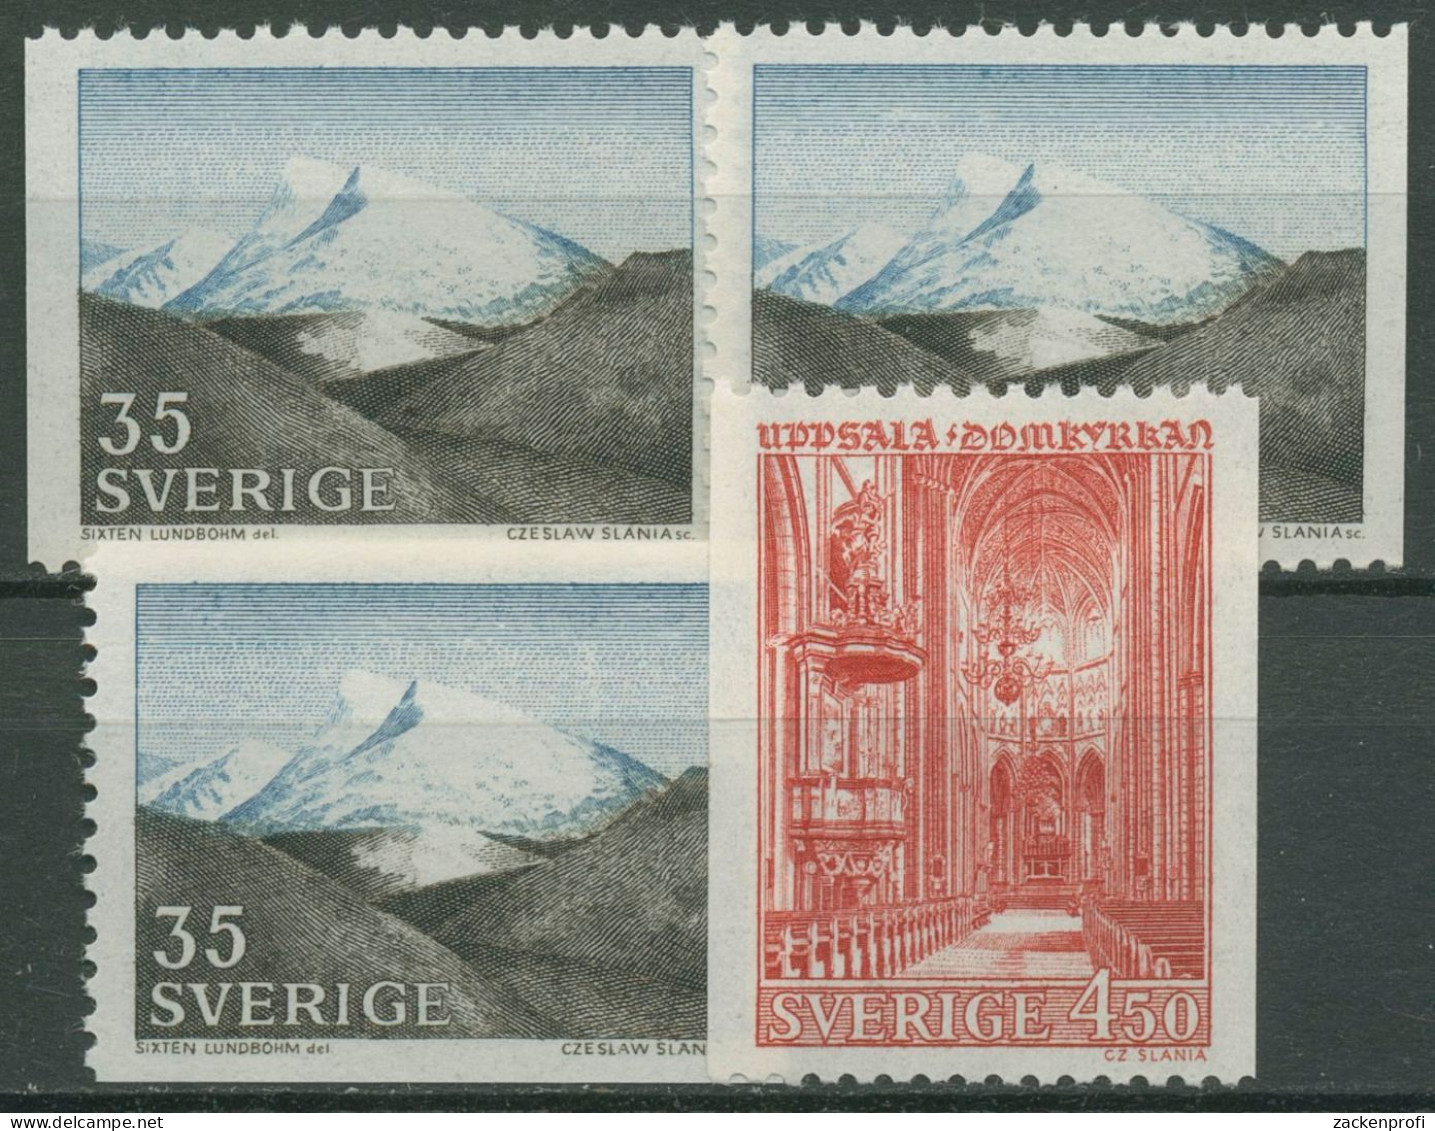 Schweden 1967 Gebirge Fjäll, Domkirche Uppsala 575/76 Postfrisch - Unused Stamps